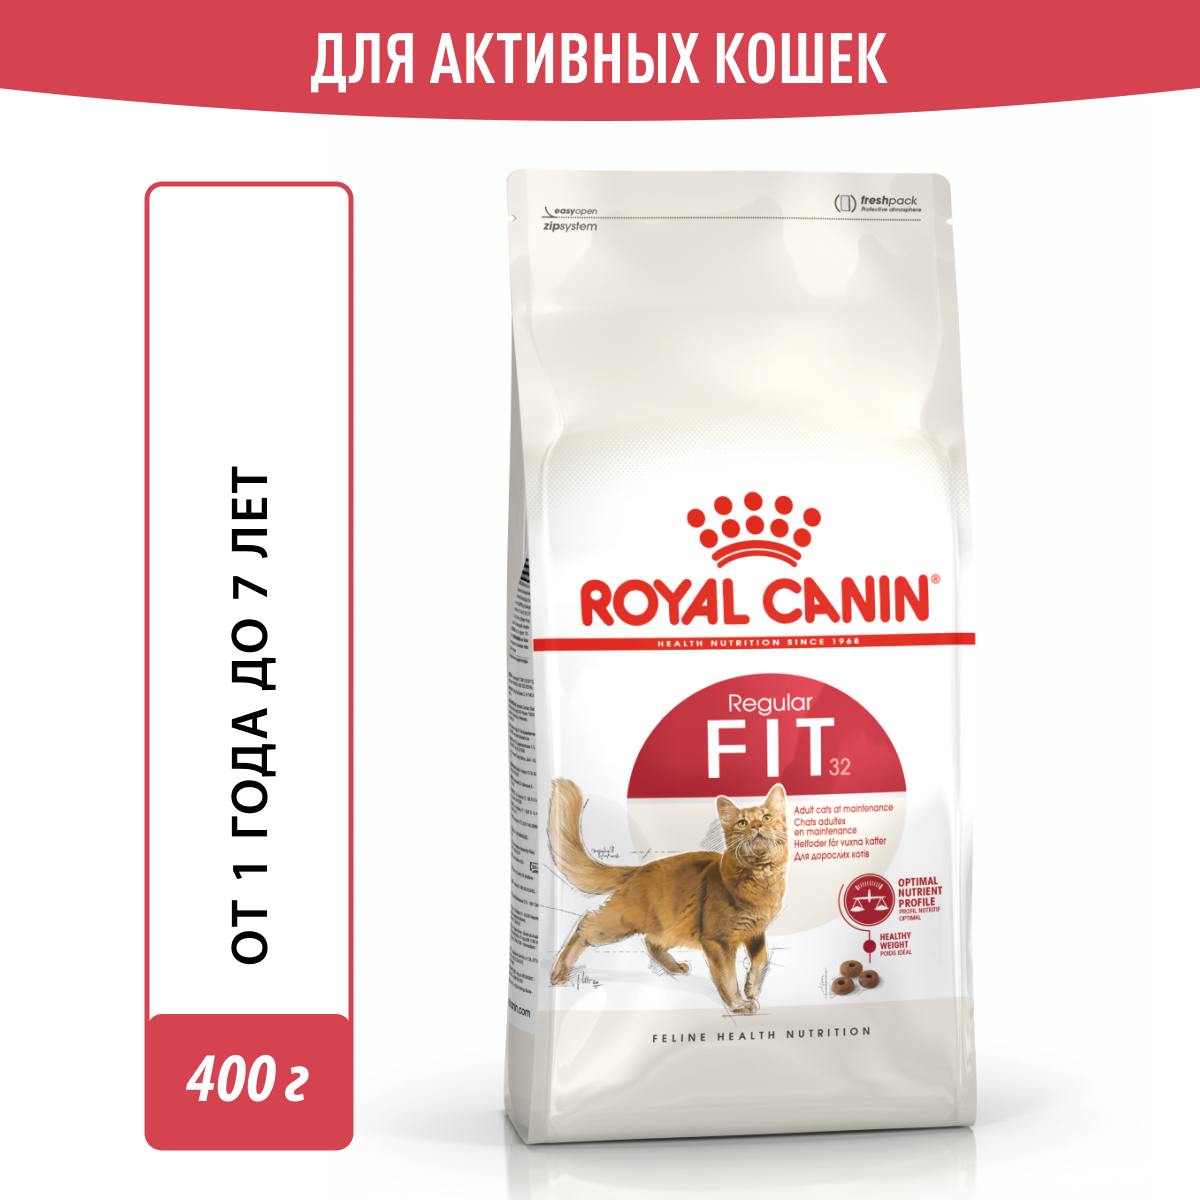 Royal Canin Fit 32 сухой корм для кошек с нормальной активностью 400г